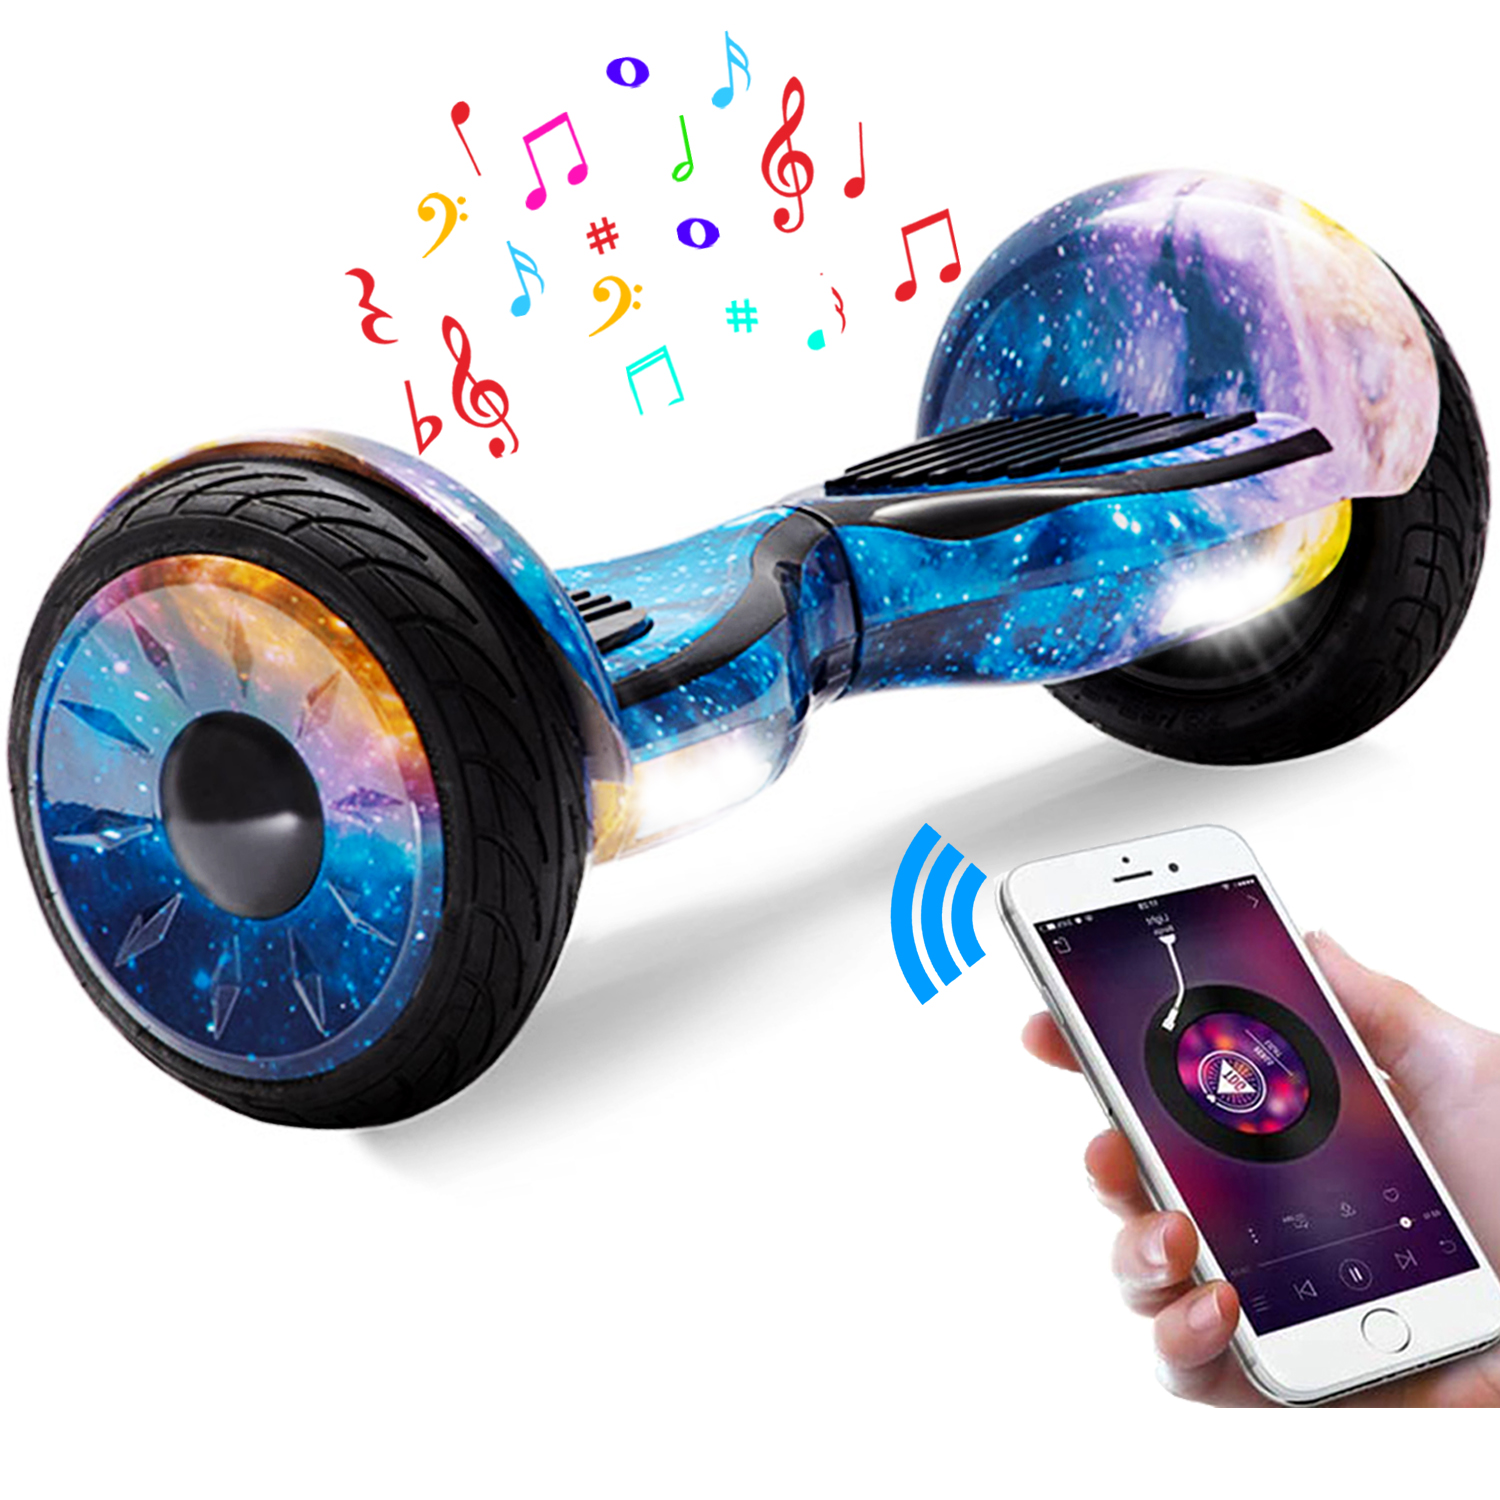 10" blaue Galaxie Hoverboard mit Bluetooth, Musik Lautsprecher und Led Leuchten - 700W 15km/h